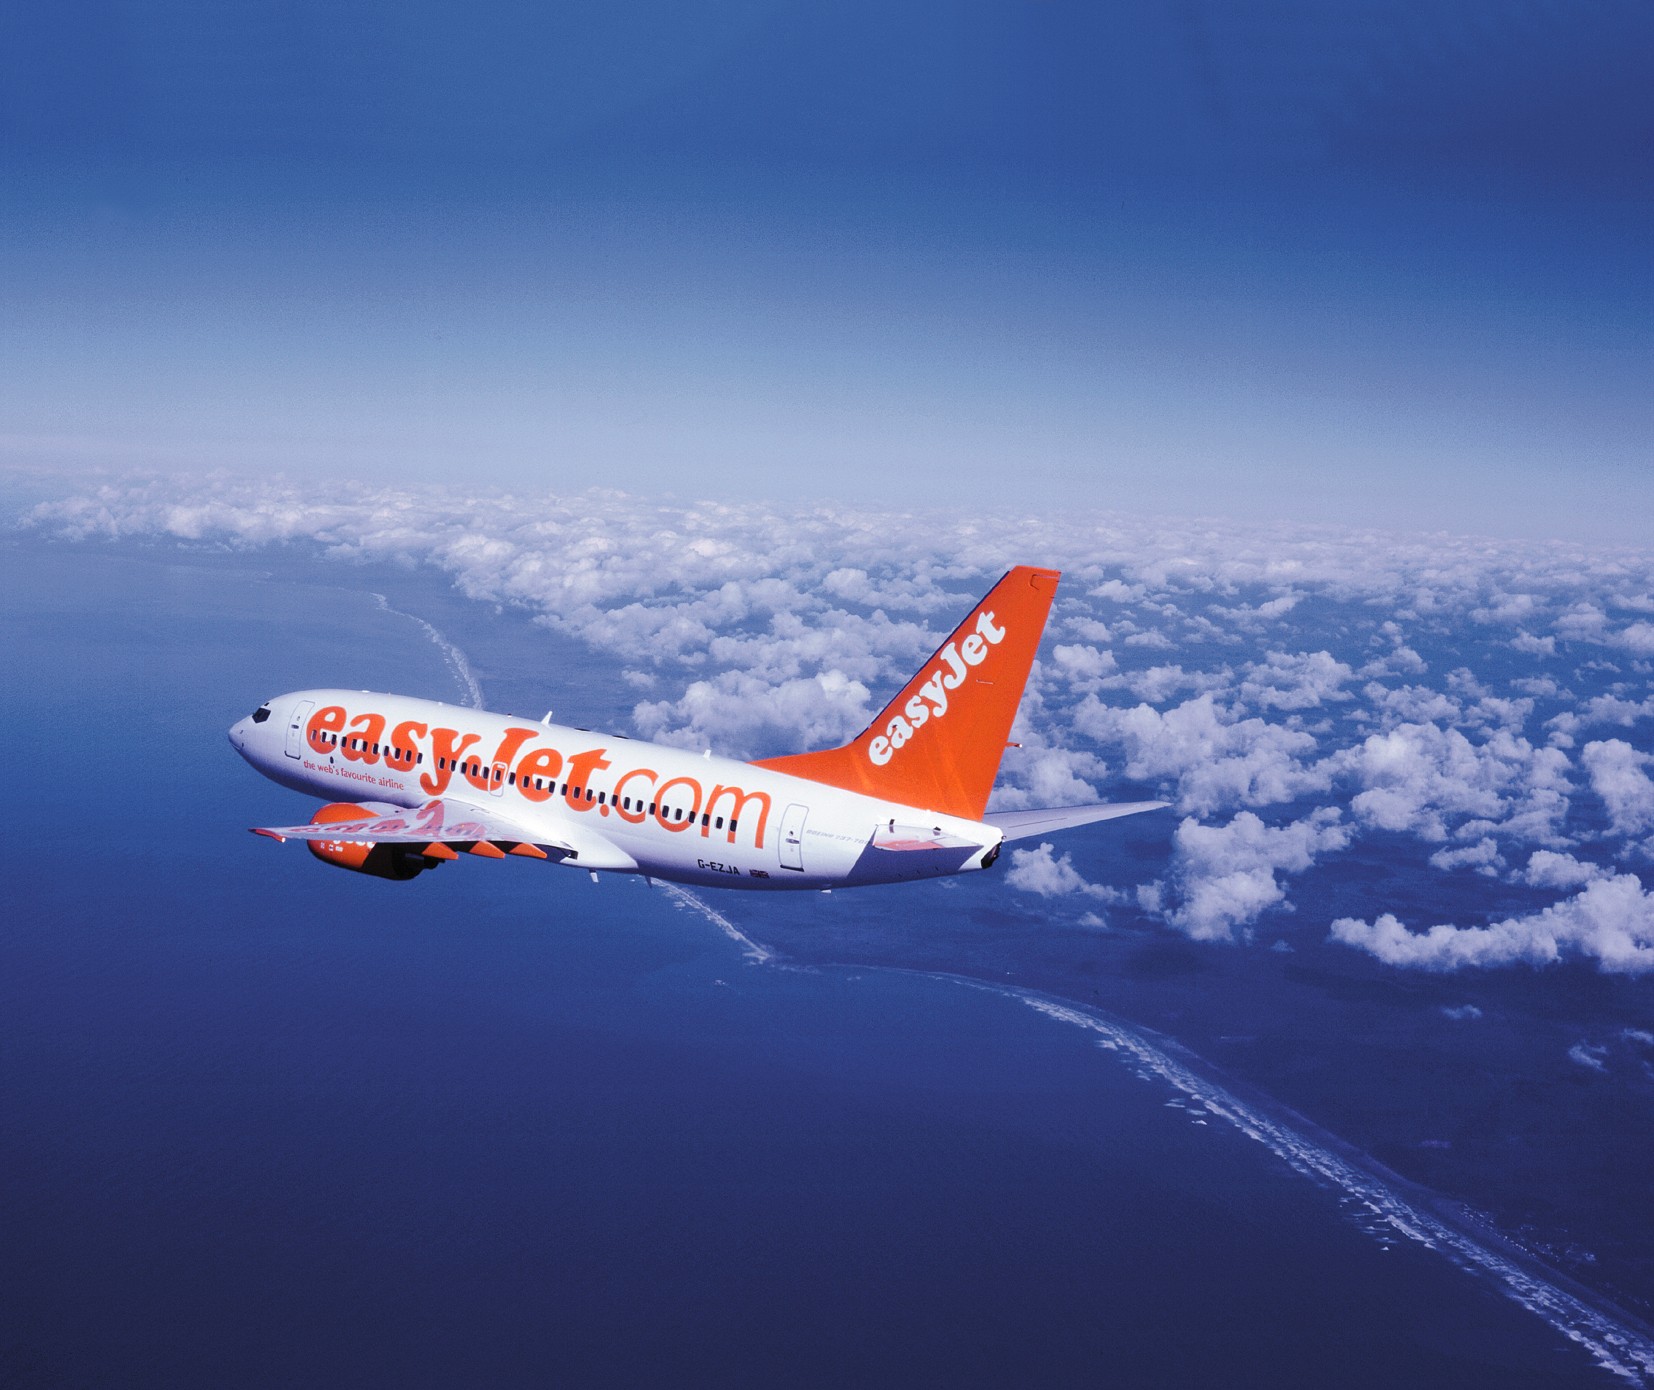 easyjet fa cassa sui clienti business.Integrazione dei servizi e 12 mln di passeggeri